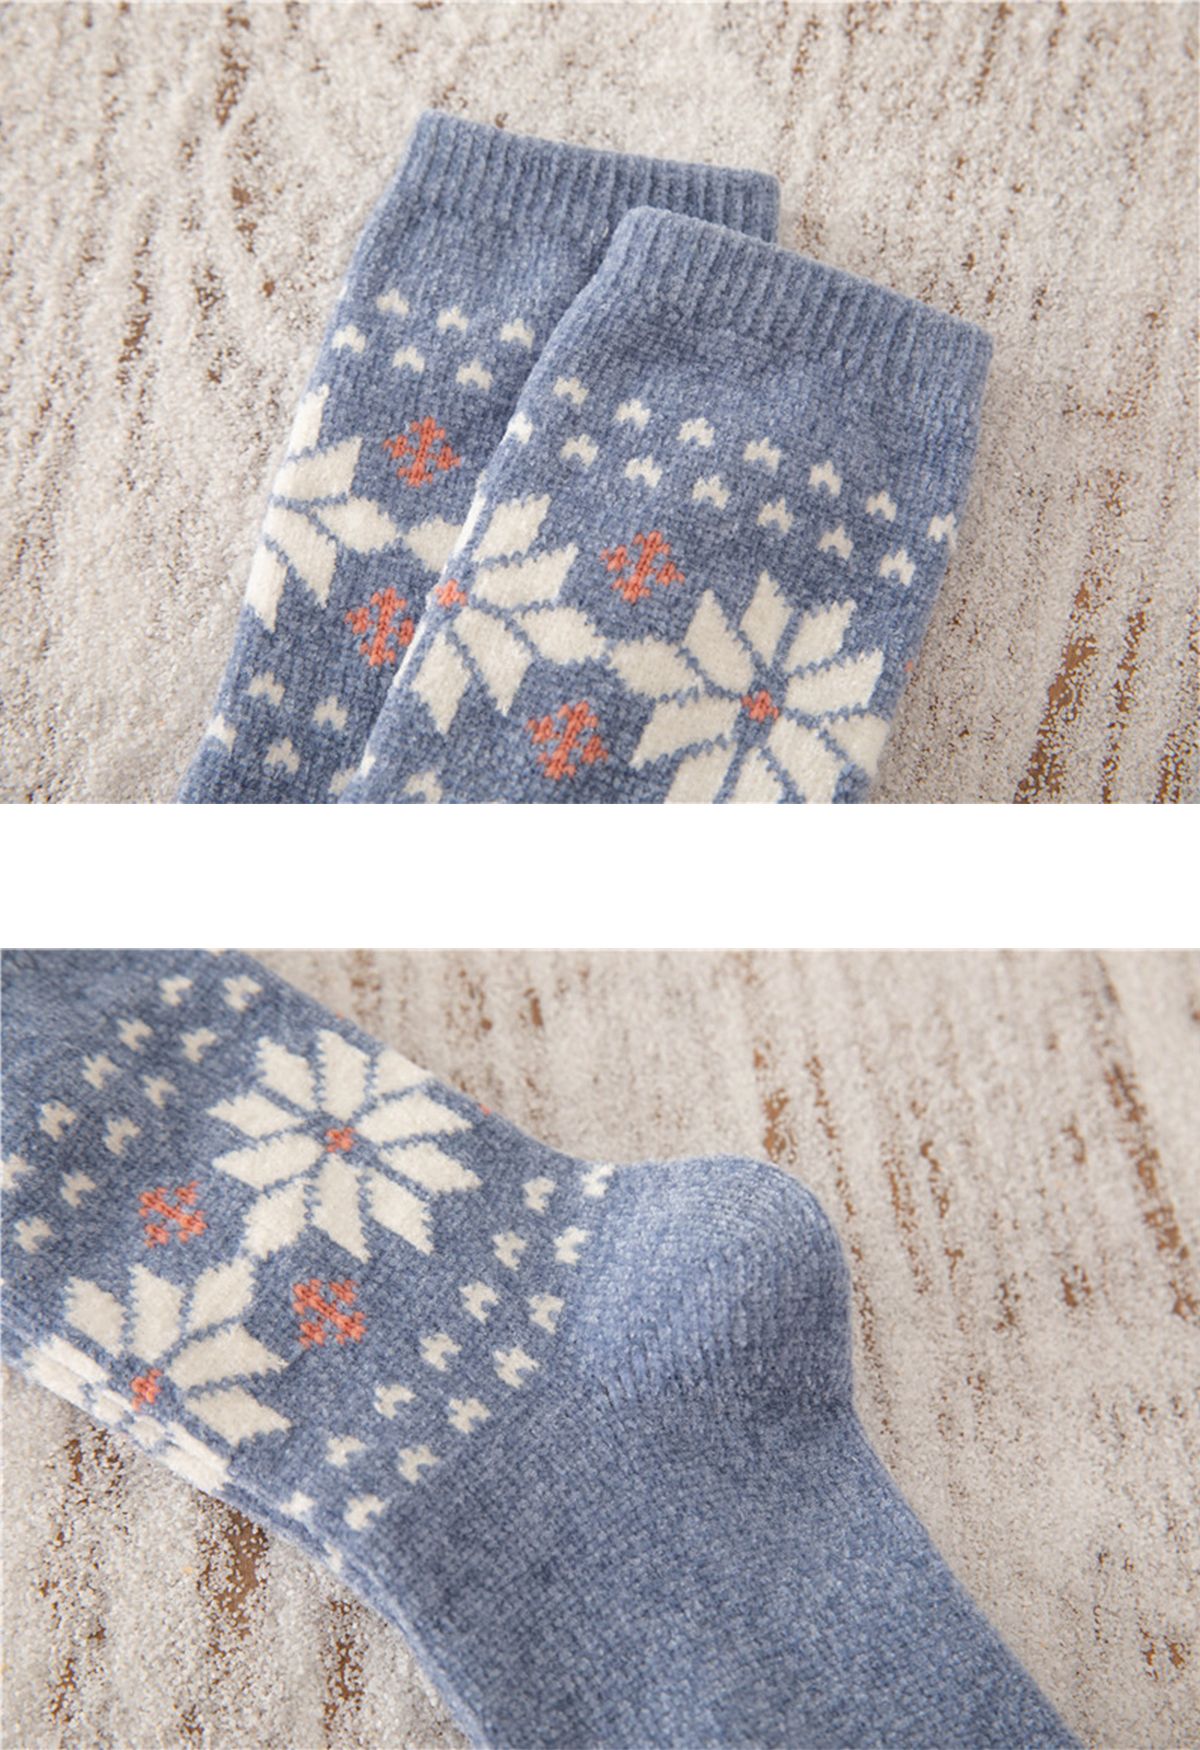 Chaussettes mi-mollet à motif de flocons de neige en bleu poussiéreux